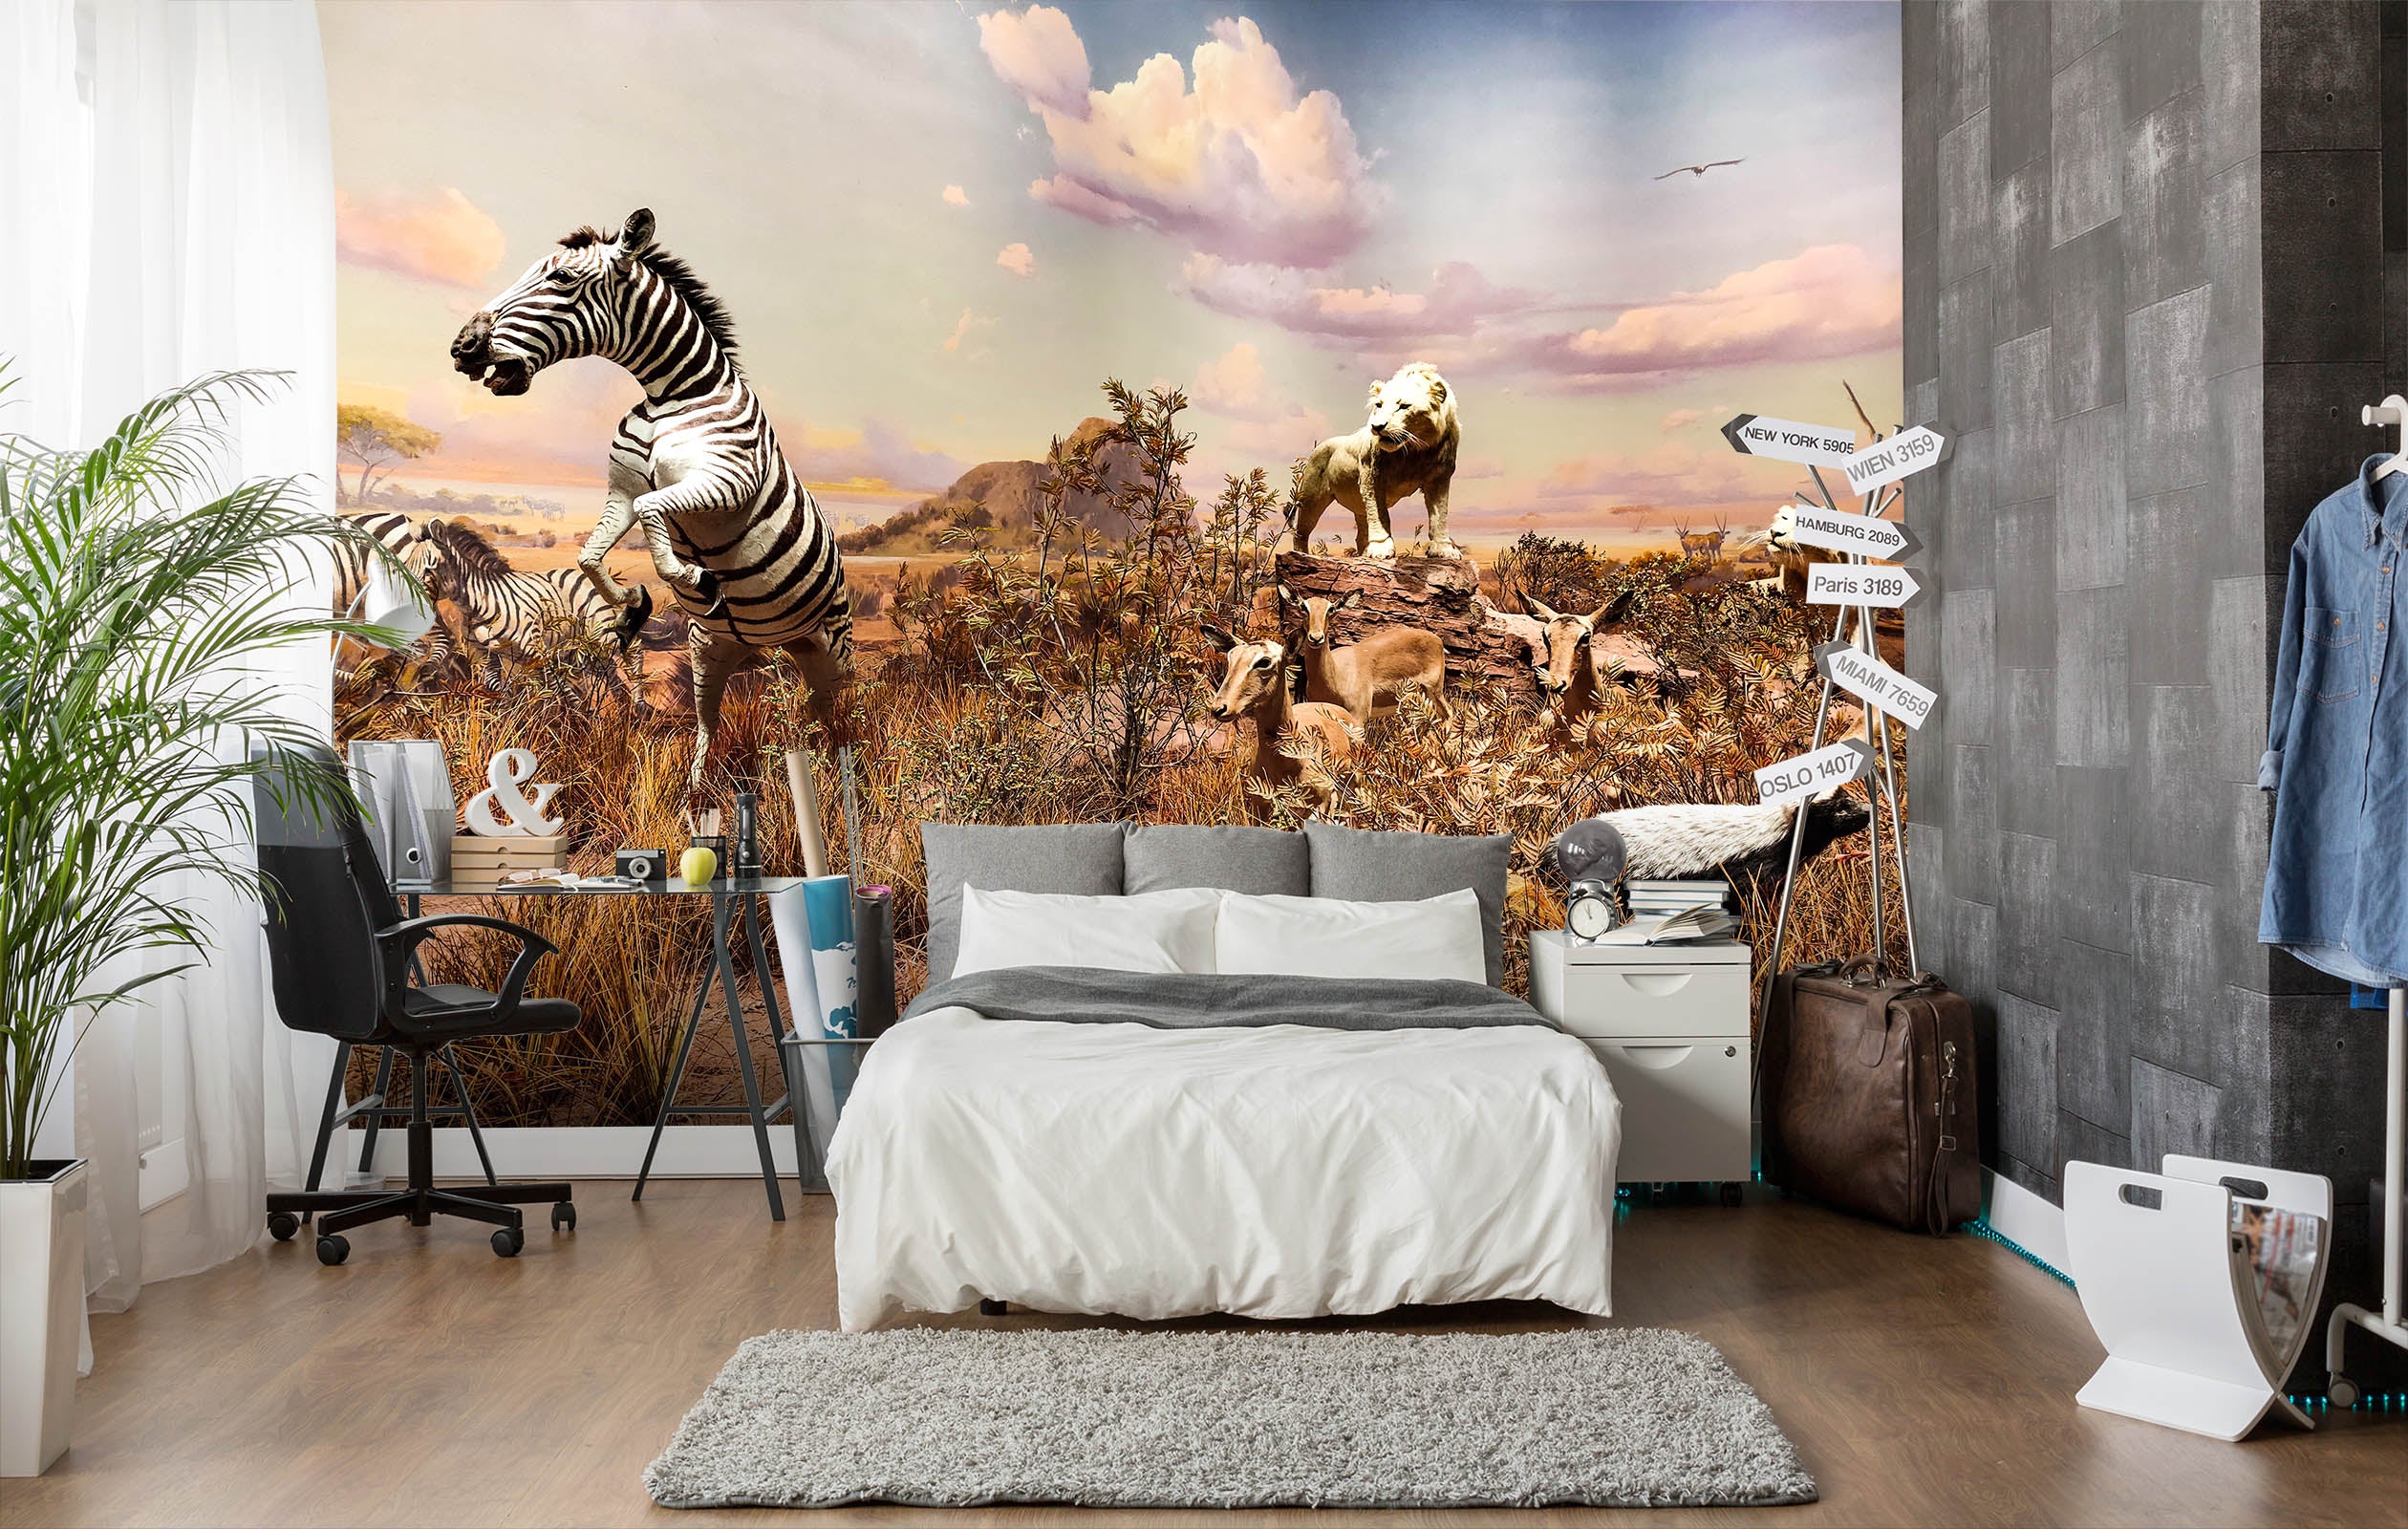 3D Zebra White Lion 422 Wall Murals